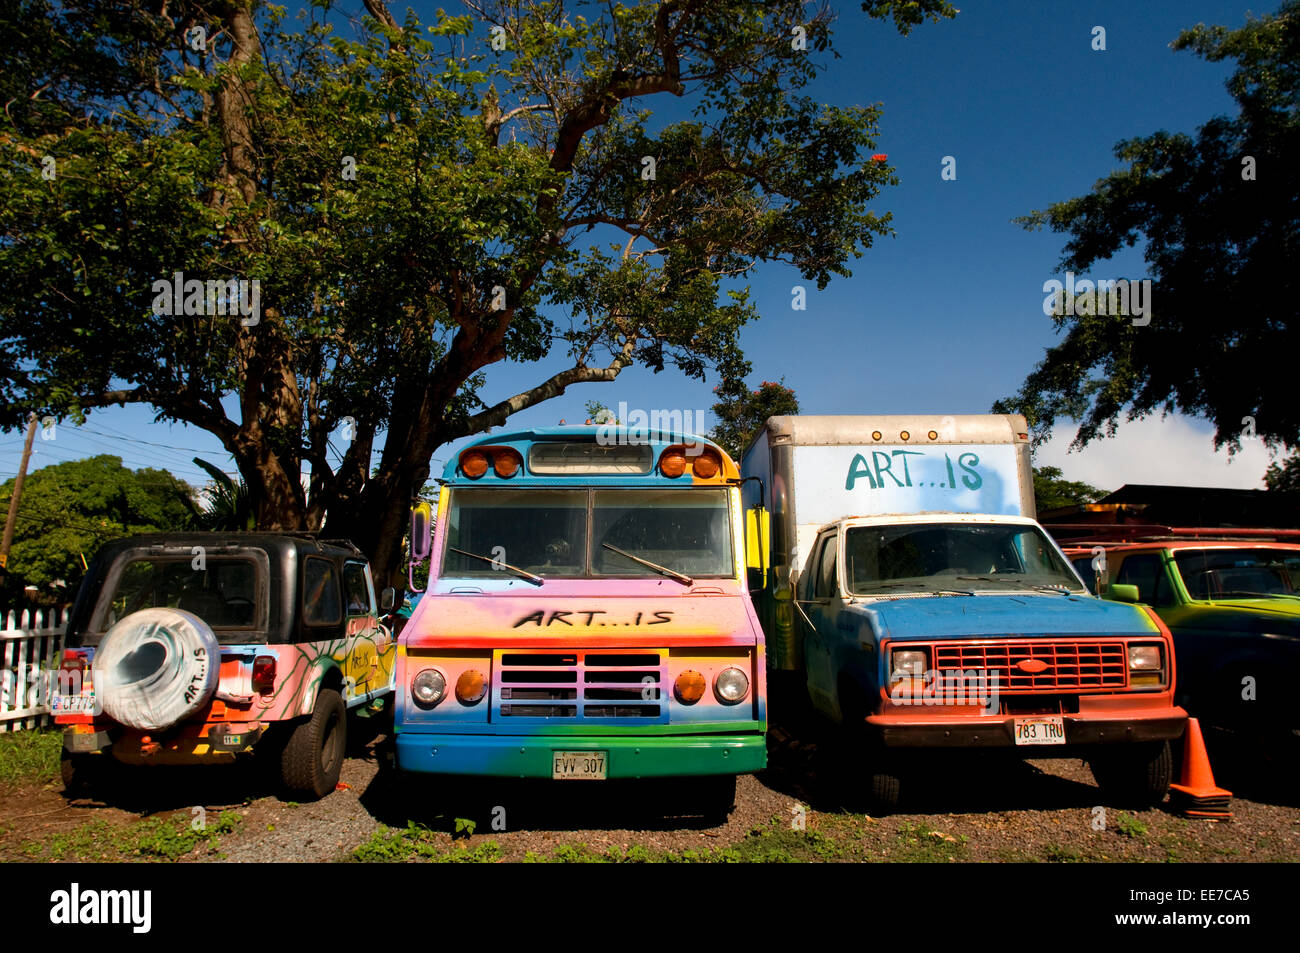 Surfbrett Friedhof Stück Himmel für künstlerische Gemälde auf Defekte und alte Autos und Fronlader. Haleiwa Nordküste Oahu Hawaii USA. Stockfoto